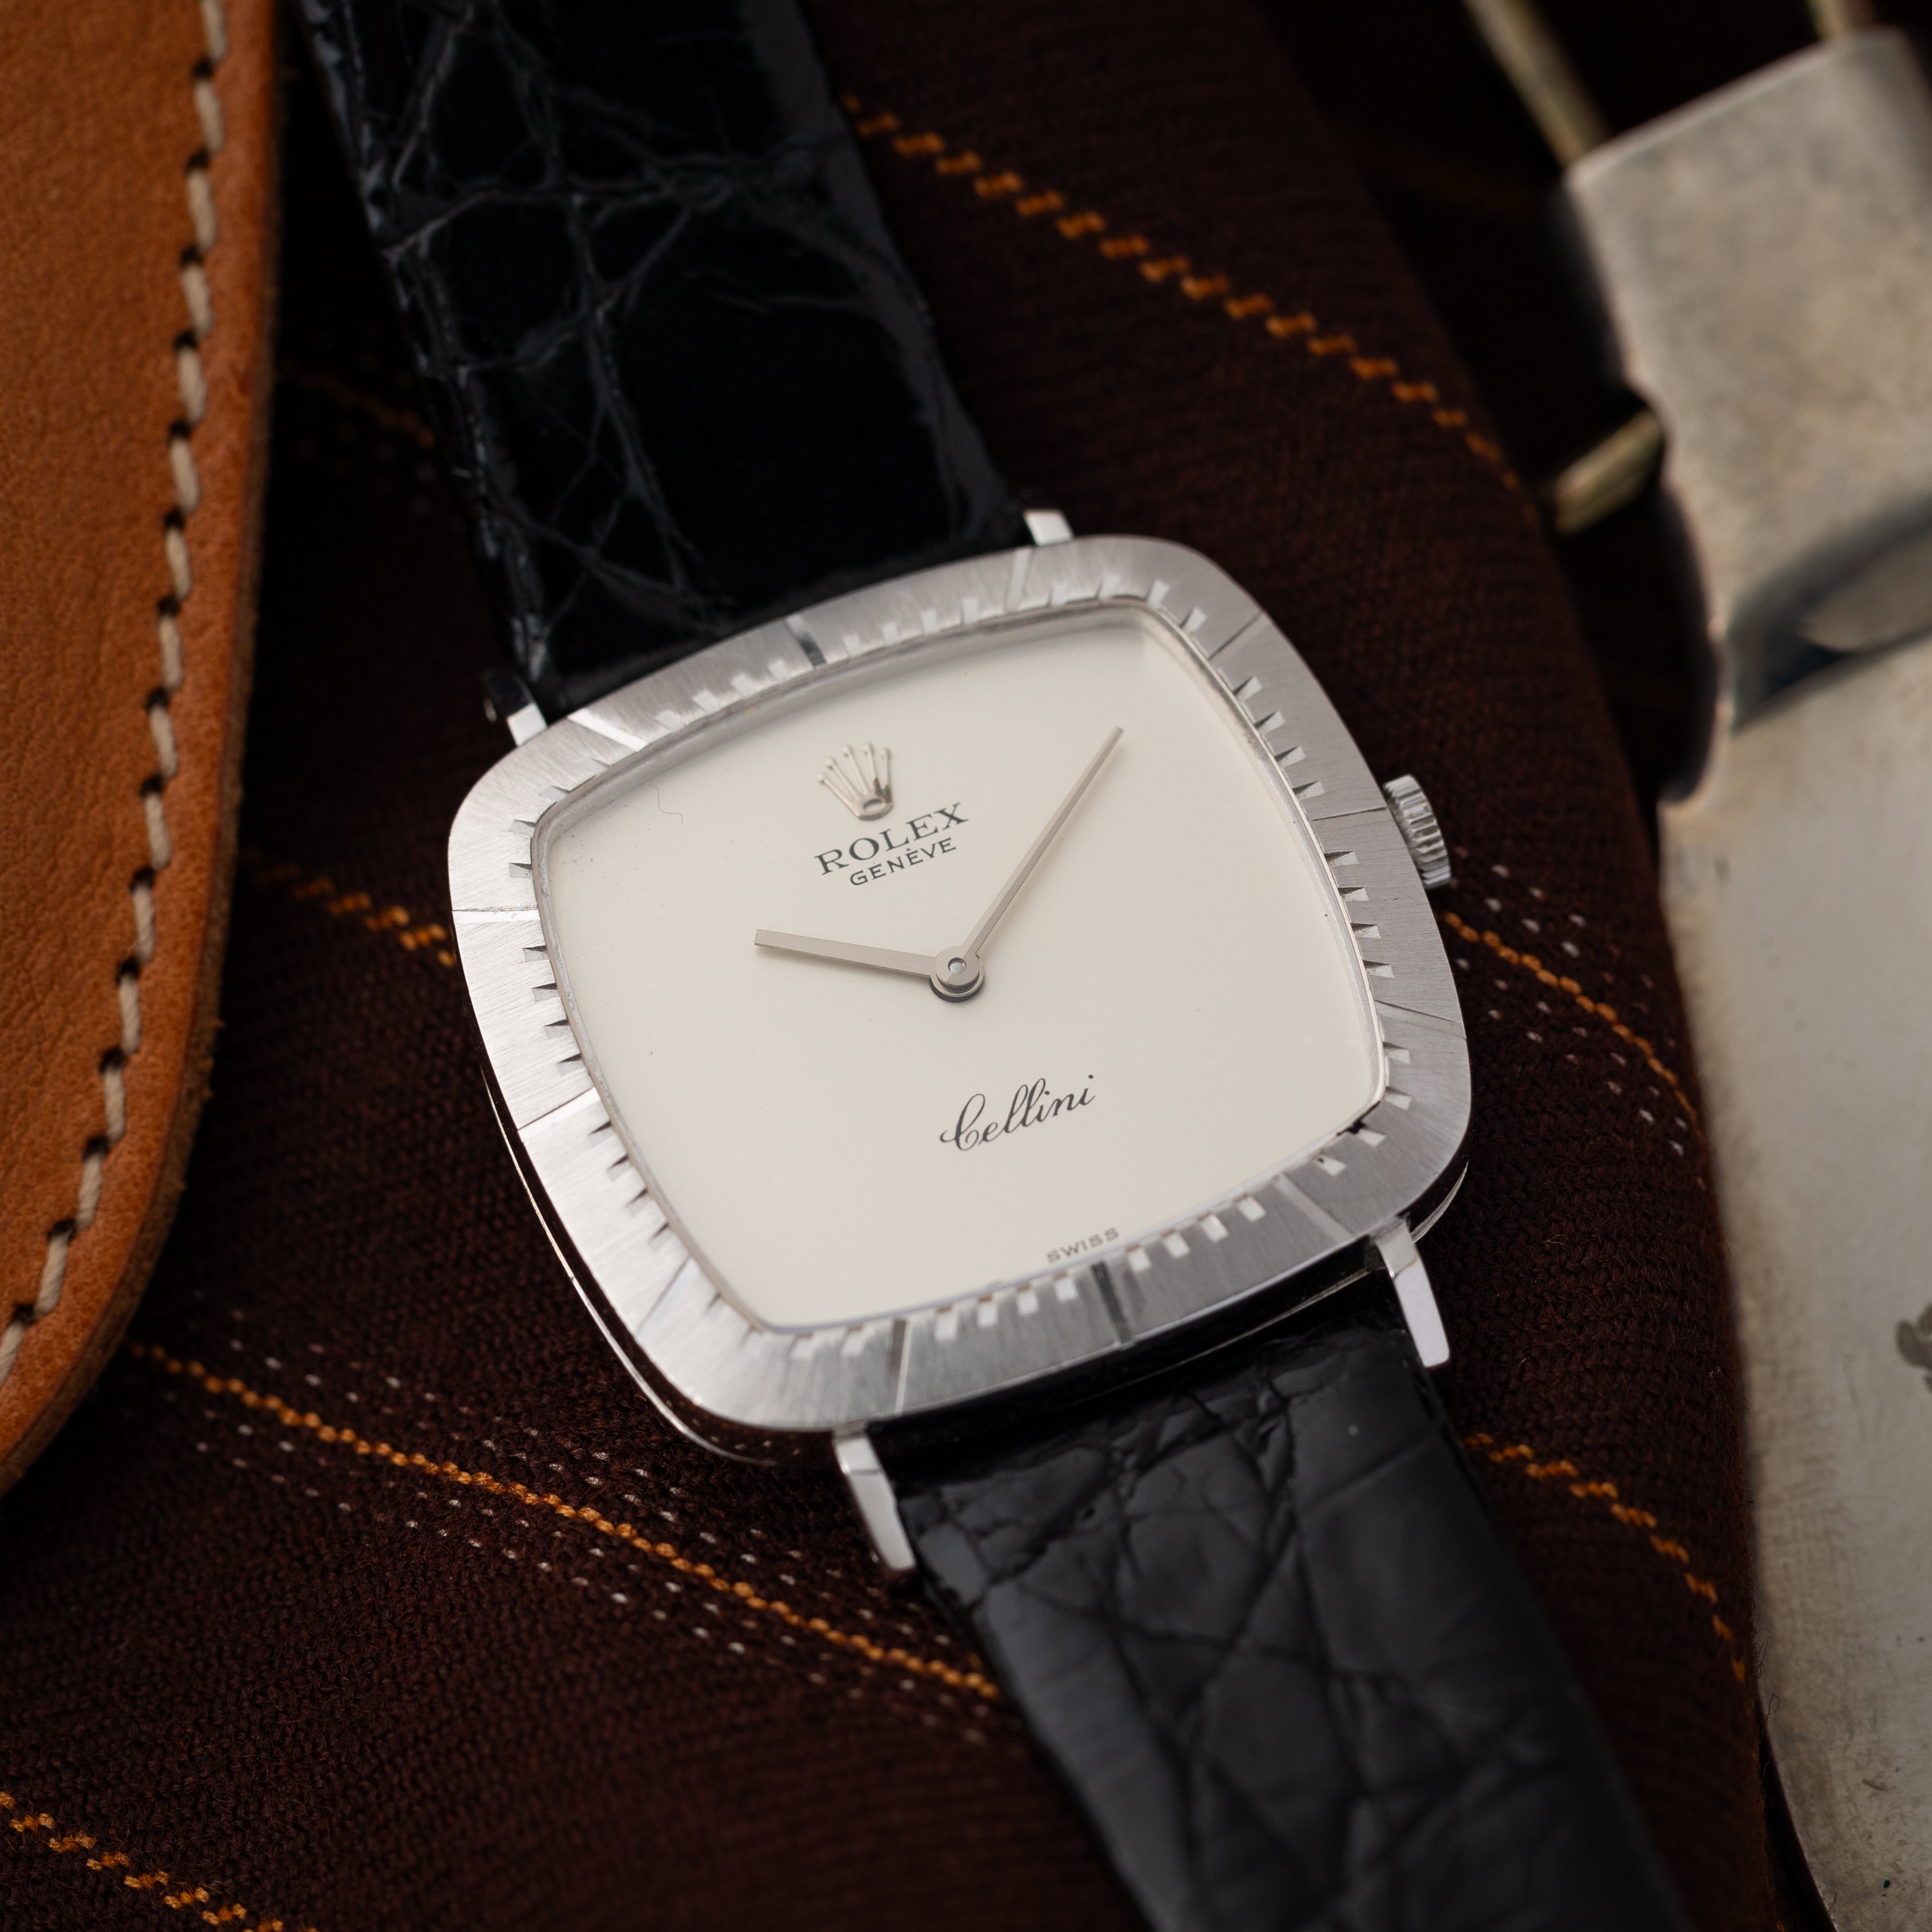 ロレックス チェリーニ 腕時計 時計 18金 K18ホワイトゴールド 3807 手巻き メンズ 1年保証 ROLEX